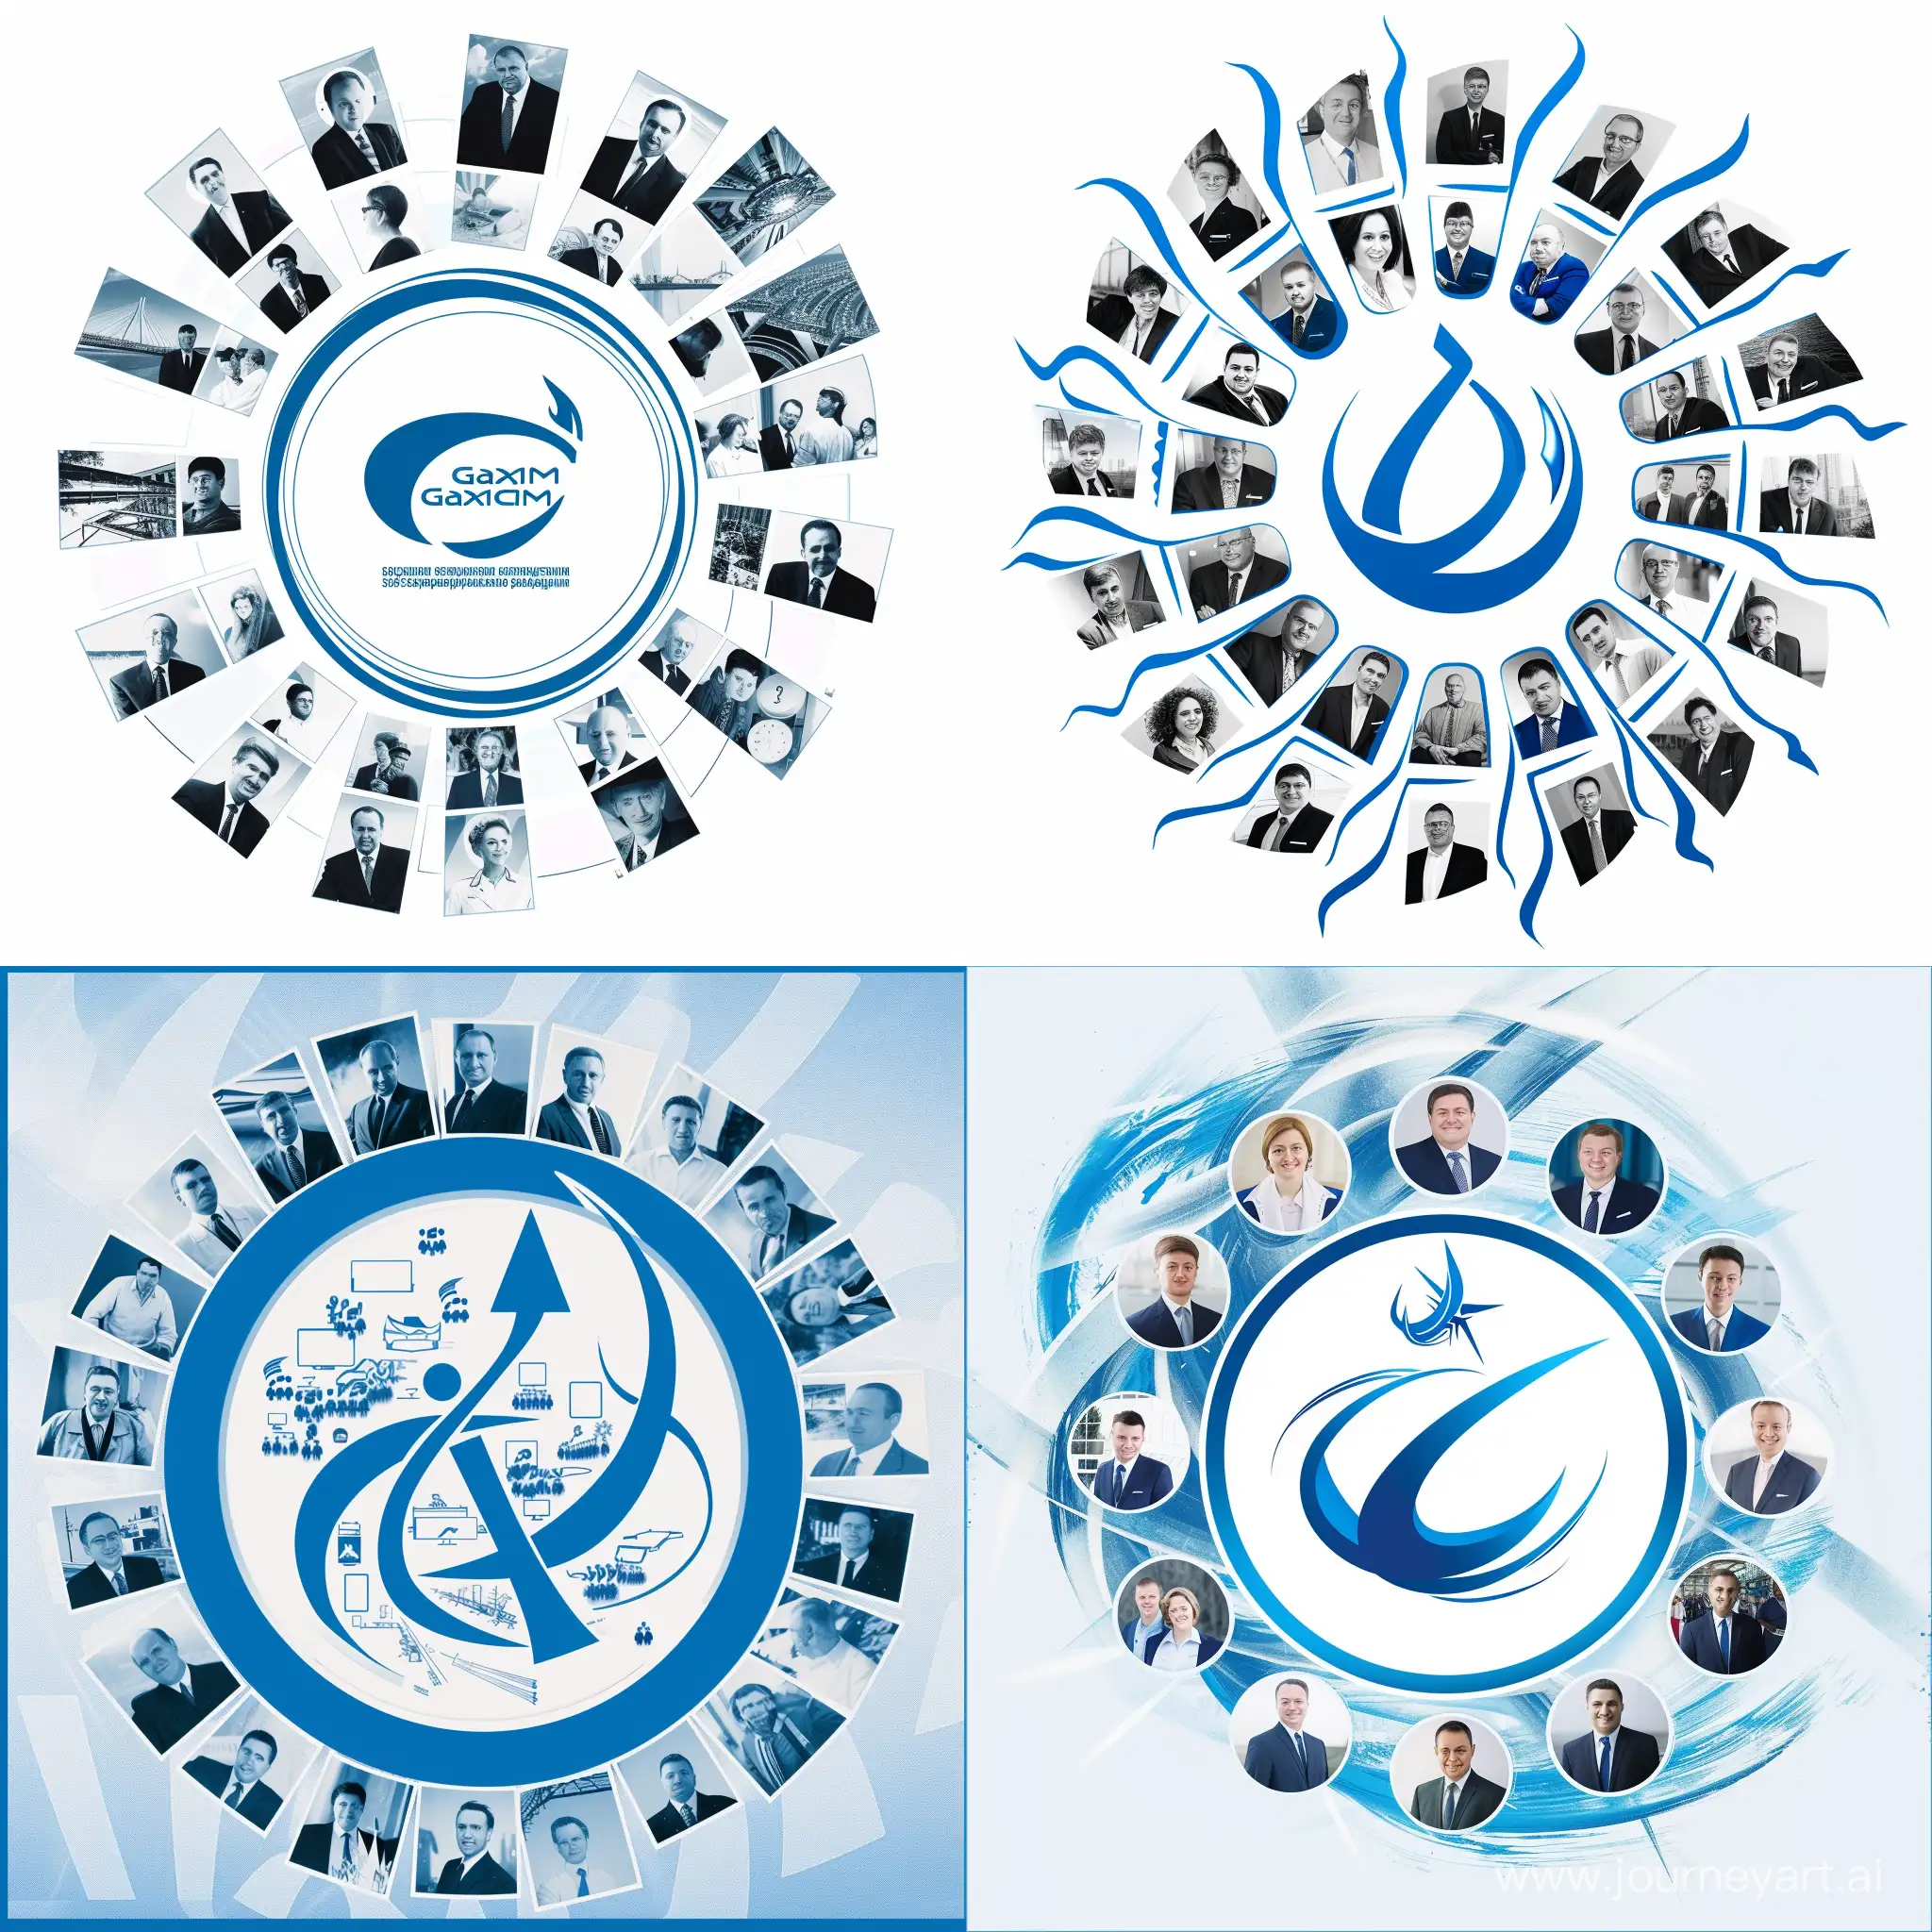 55 лет юбилей газпром, синий белый,  фотографии сотрудников вокруг логотипа в центре